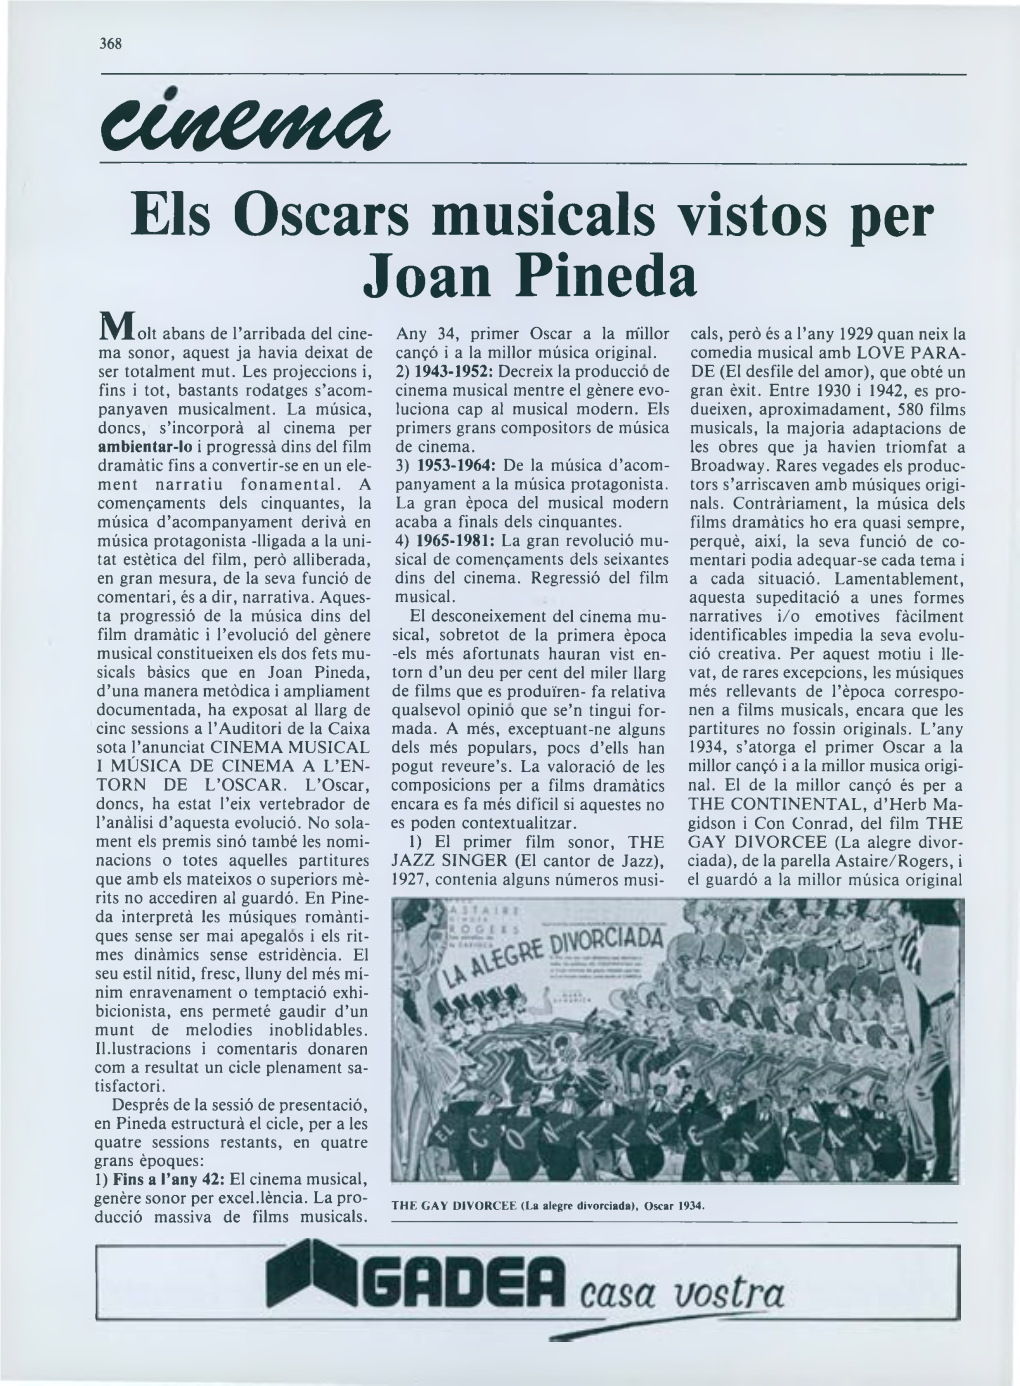 Els Oscars Musicals Vistos Per Joan Pineda